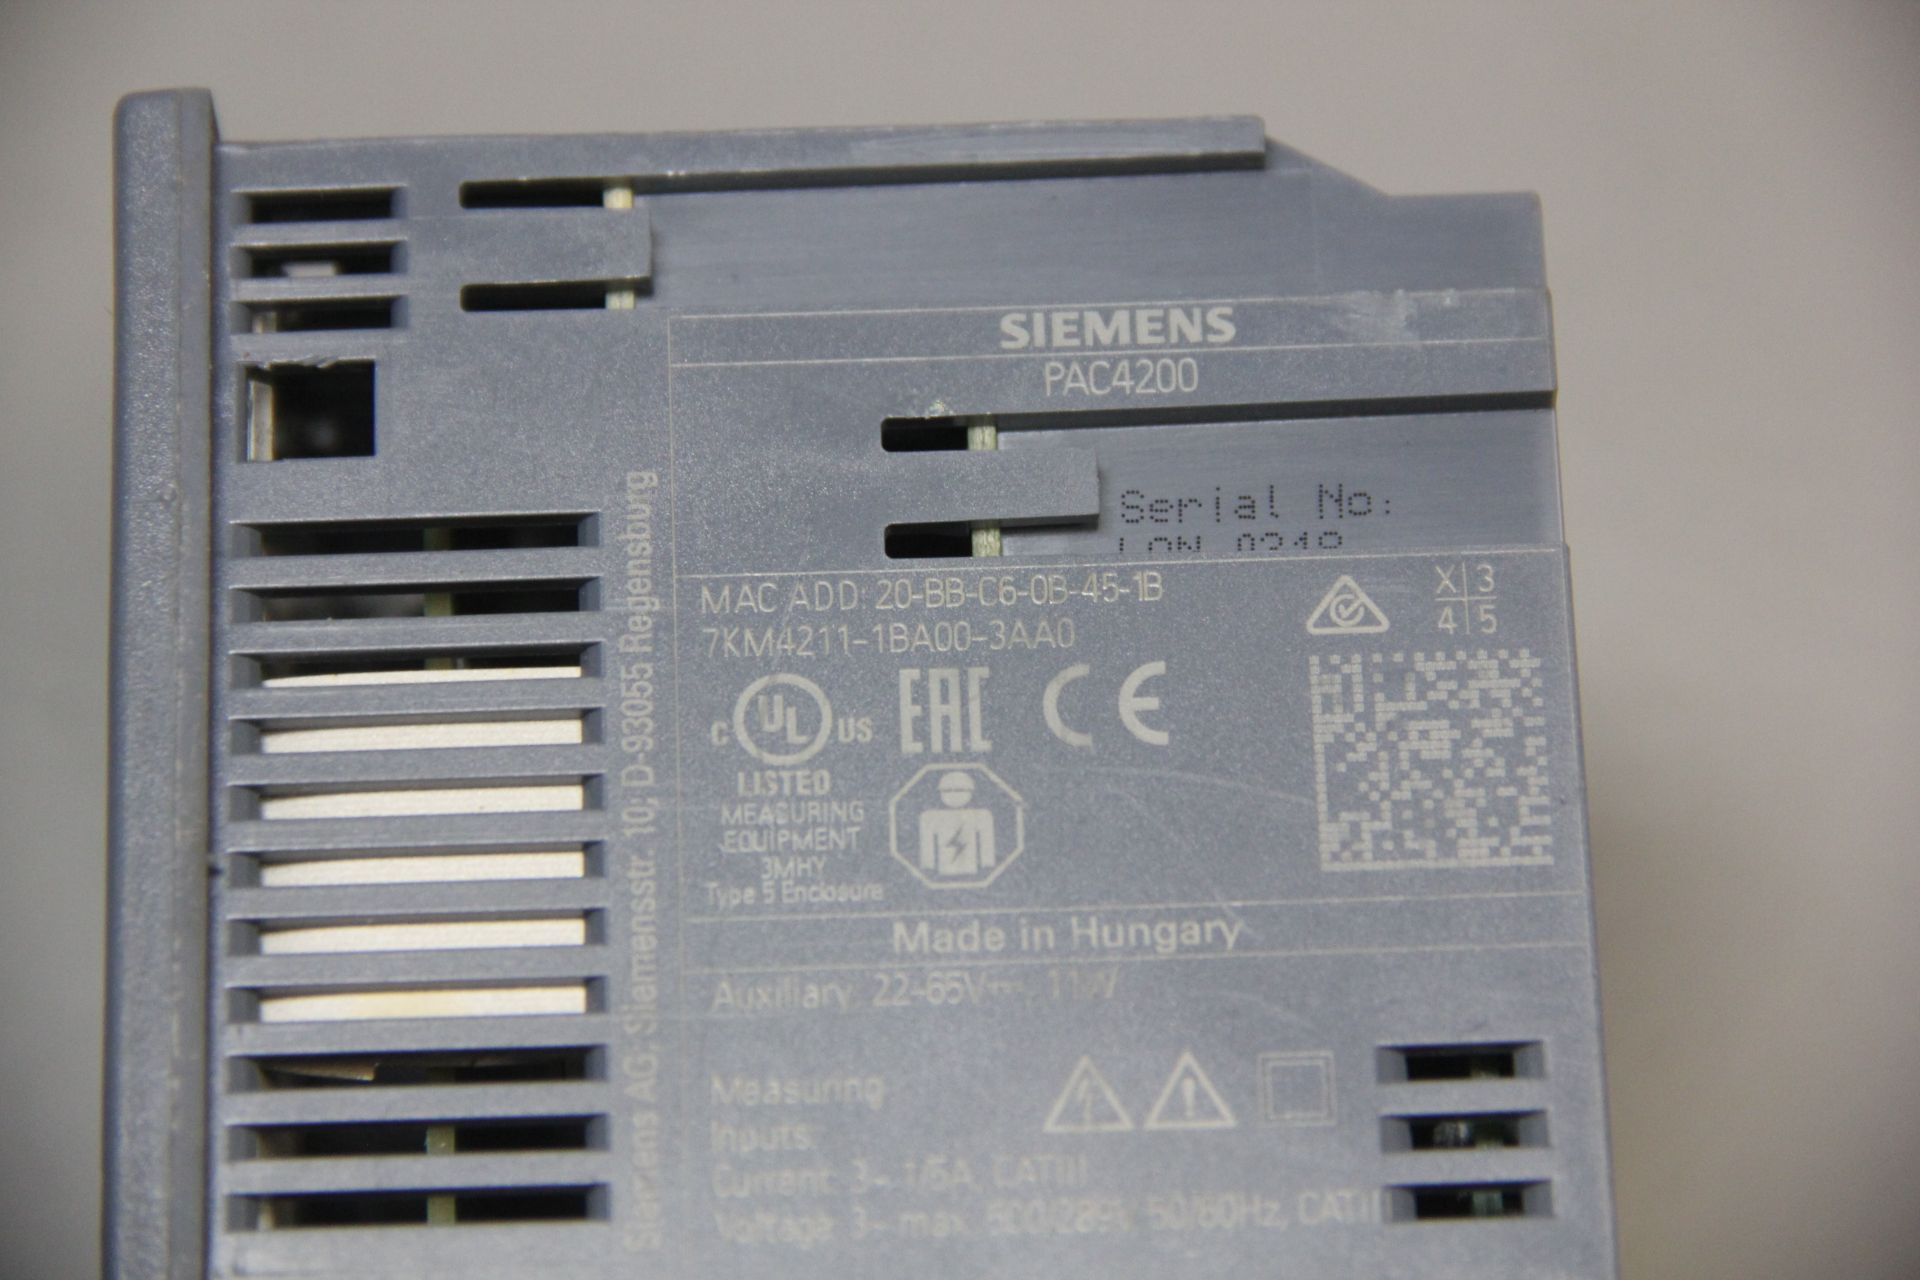 SIEMENS PAC4200 POWER METER - Image 5 of 5